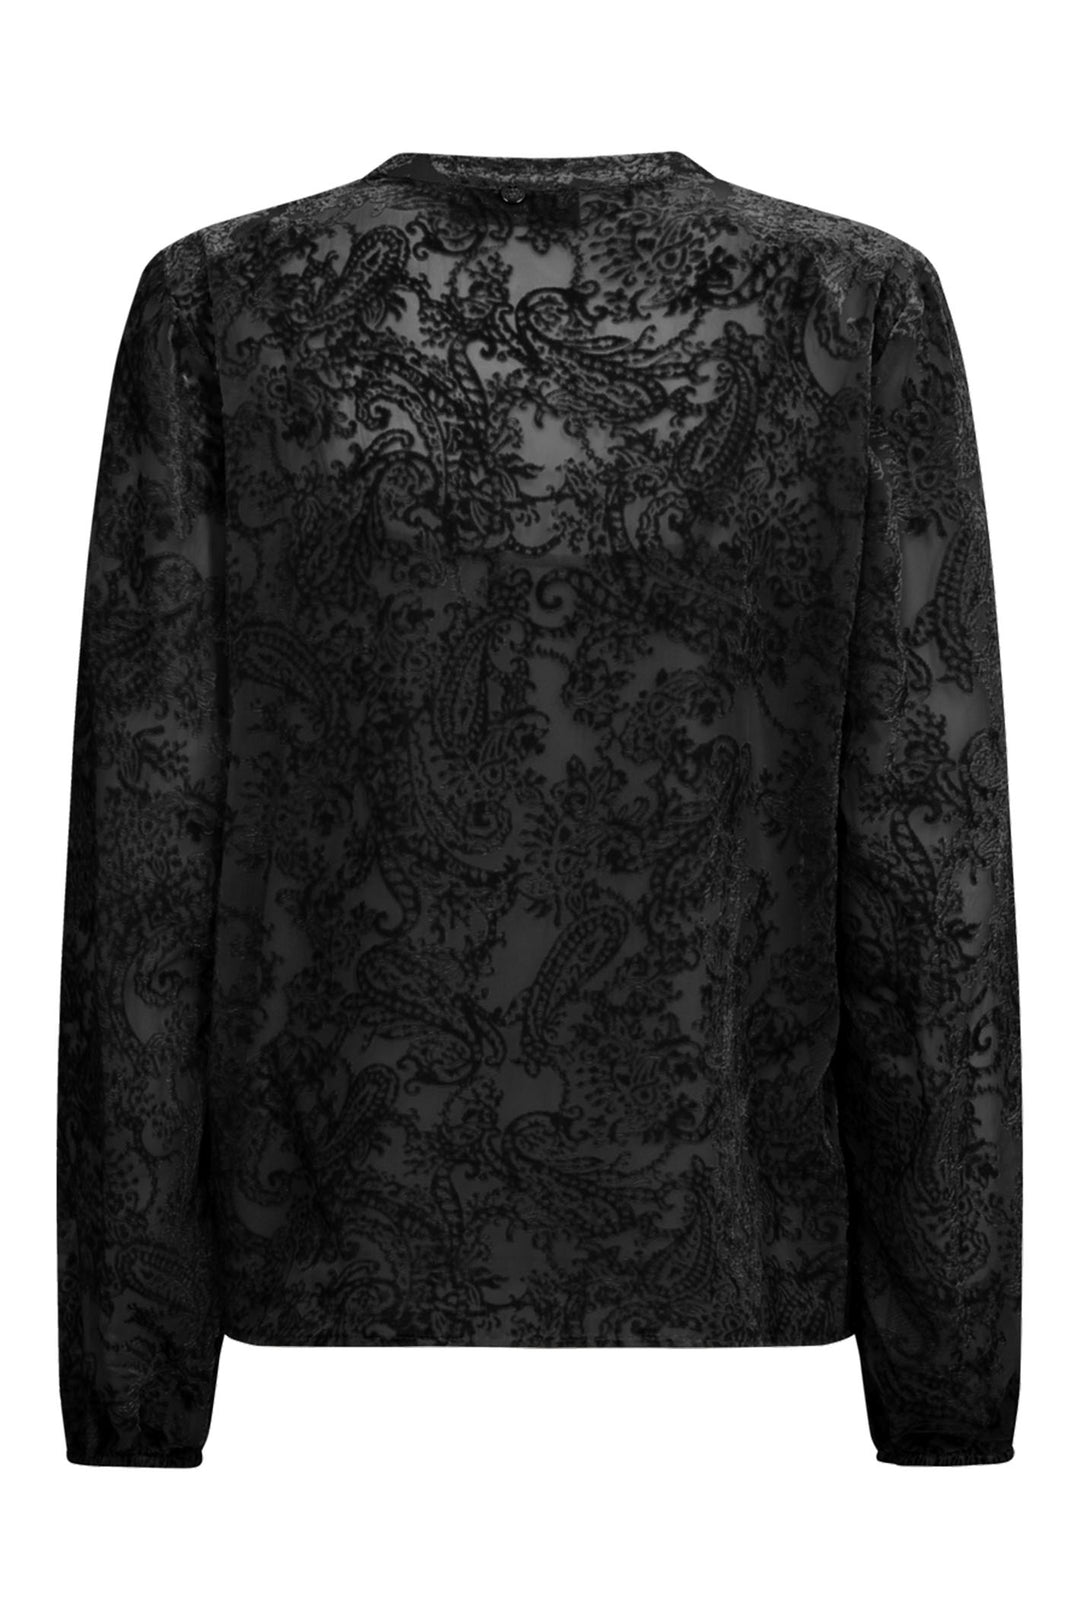 Mos Mosh 158420 MMLeta Black Velvet Shirt - Dotique Chesterfield